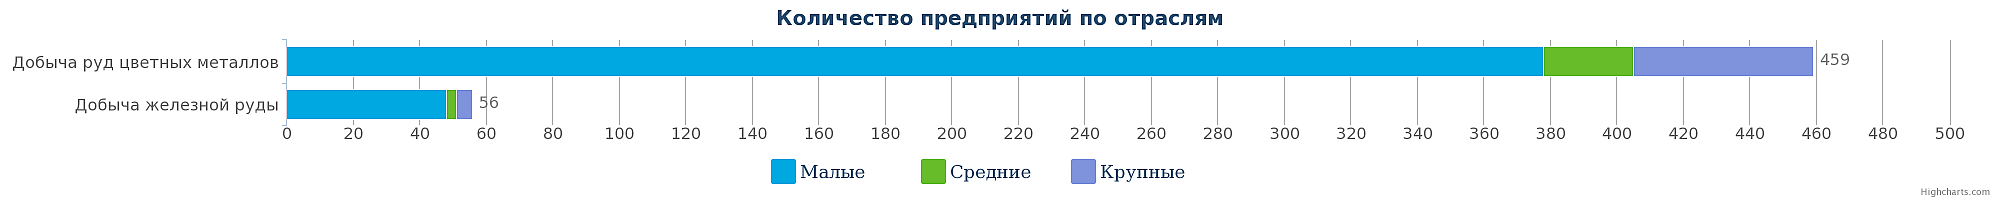 Количество компаний в сфере добычи металлических руд в Республике Казахстан по видам на 05.12.2016